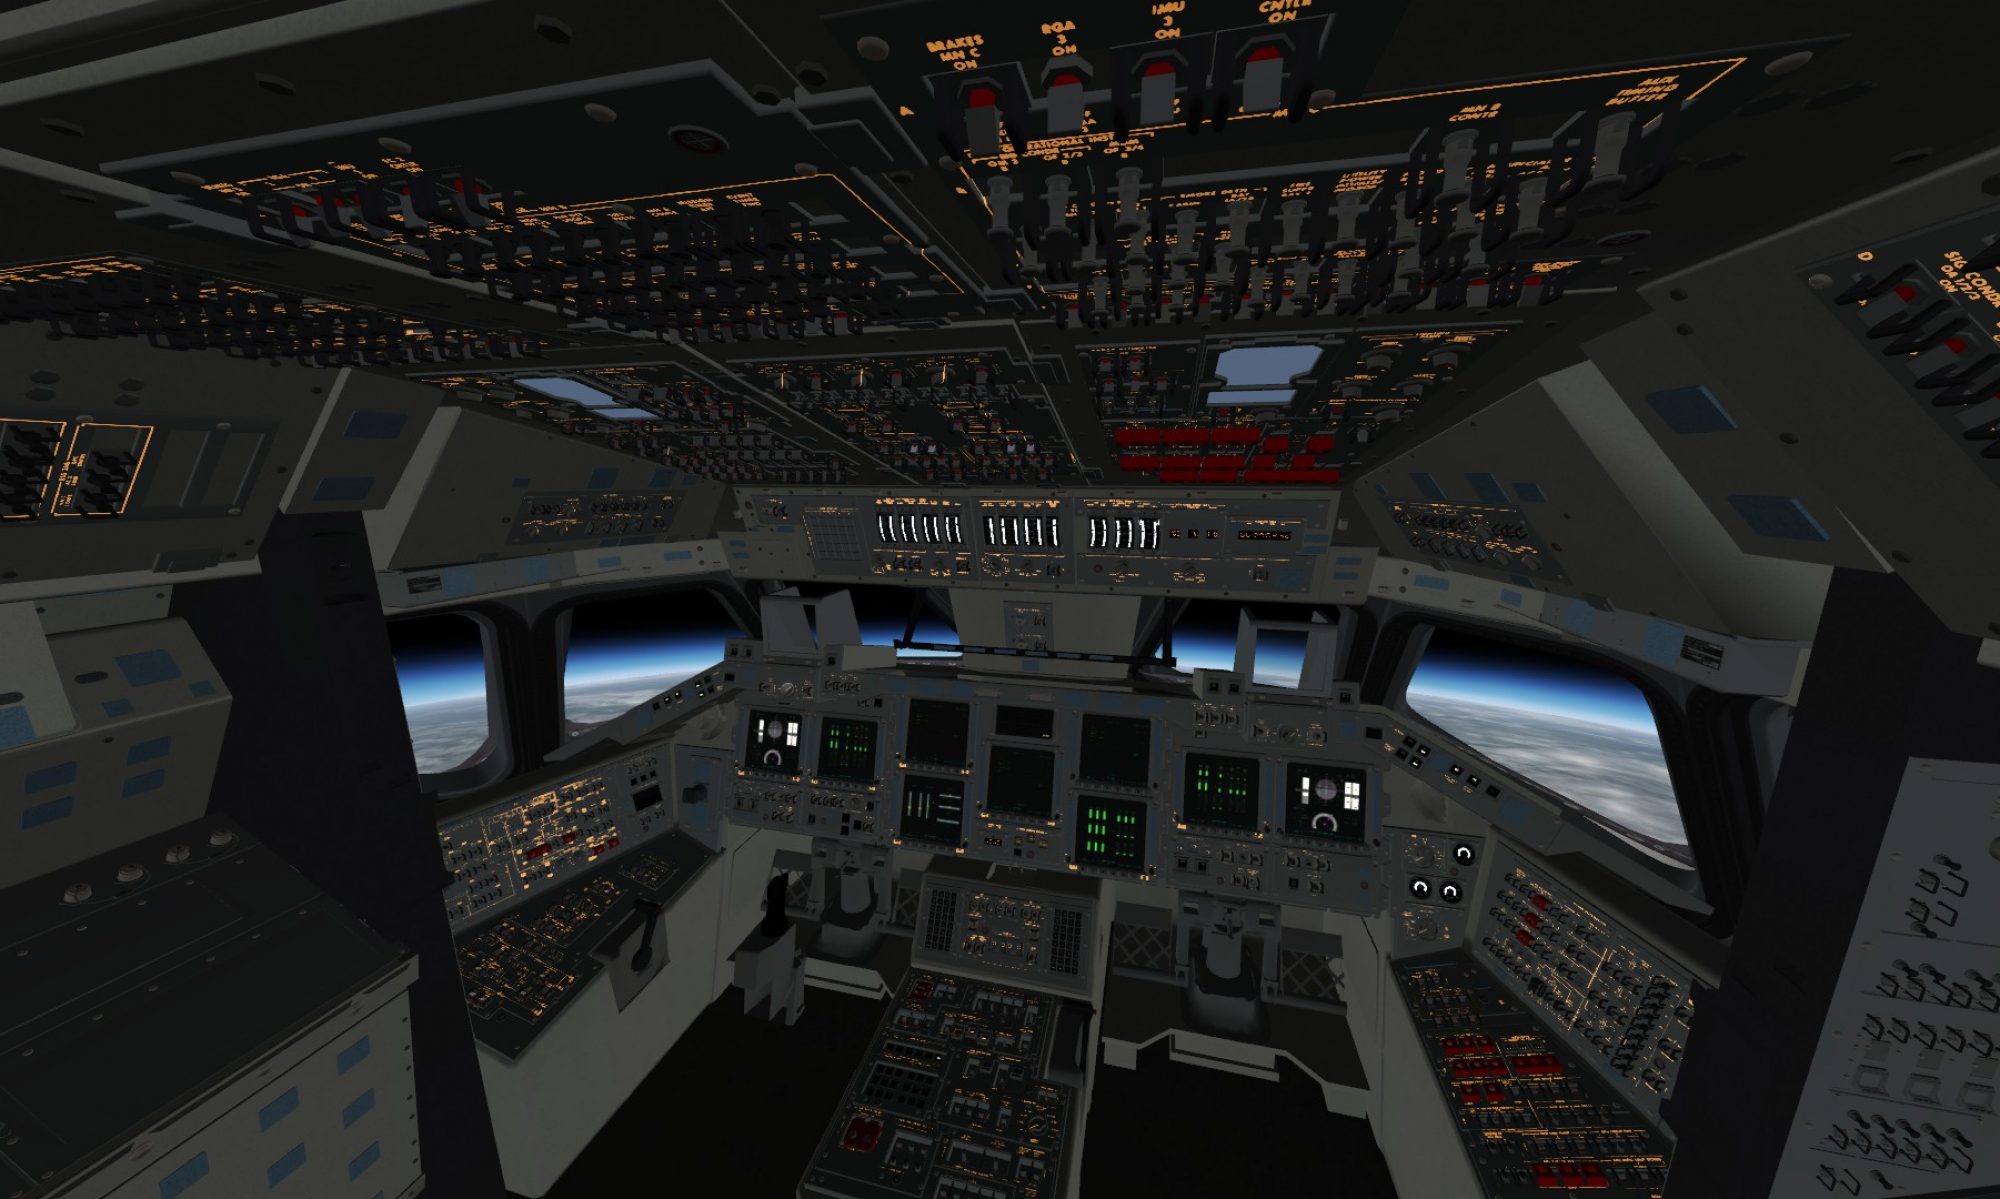 flightgear simulator for mac